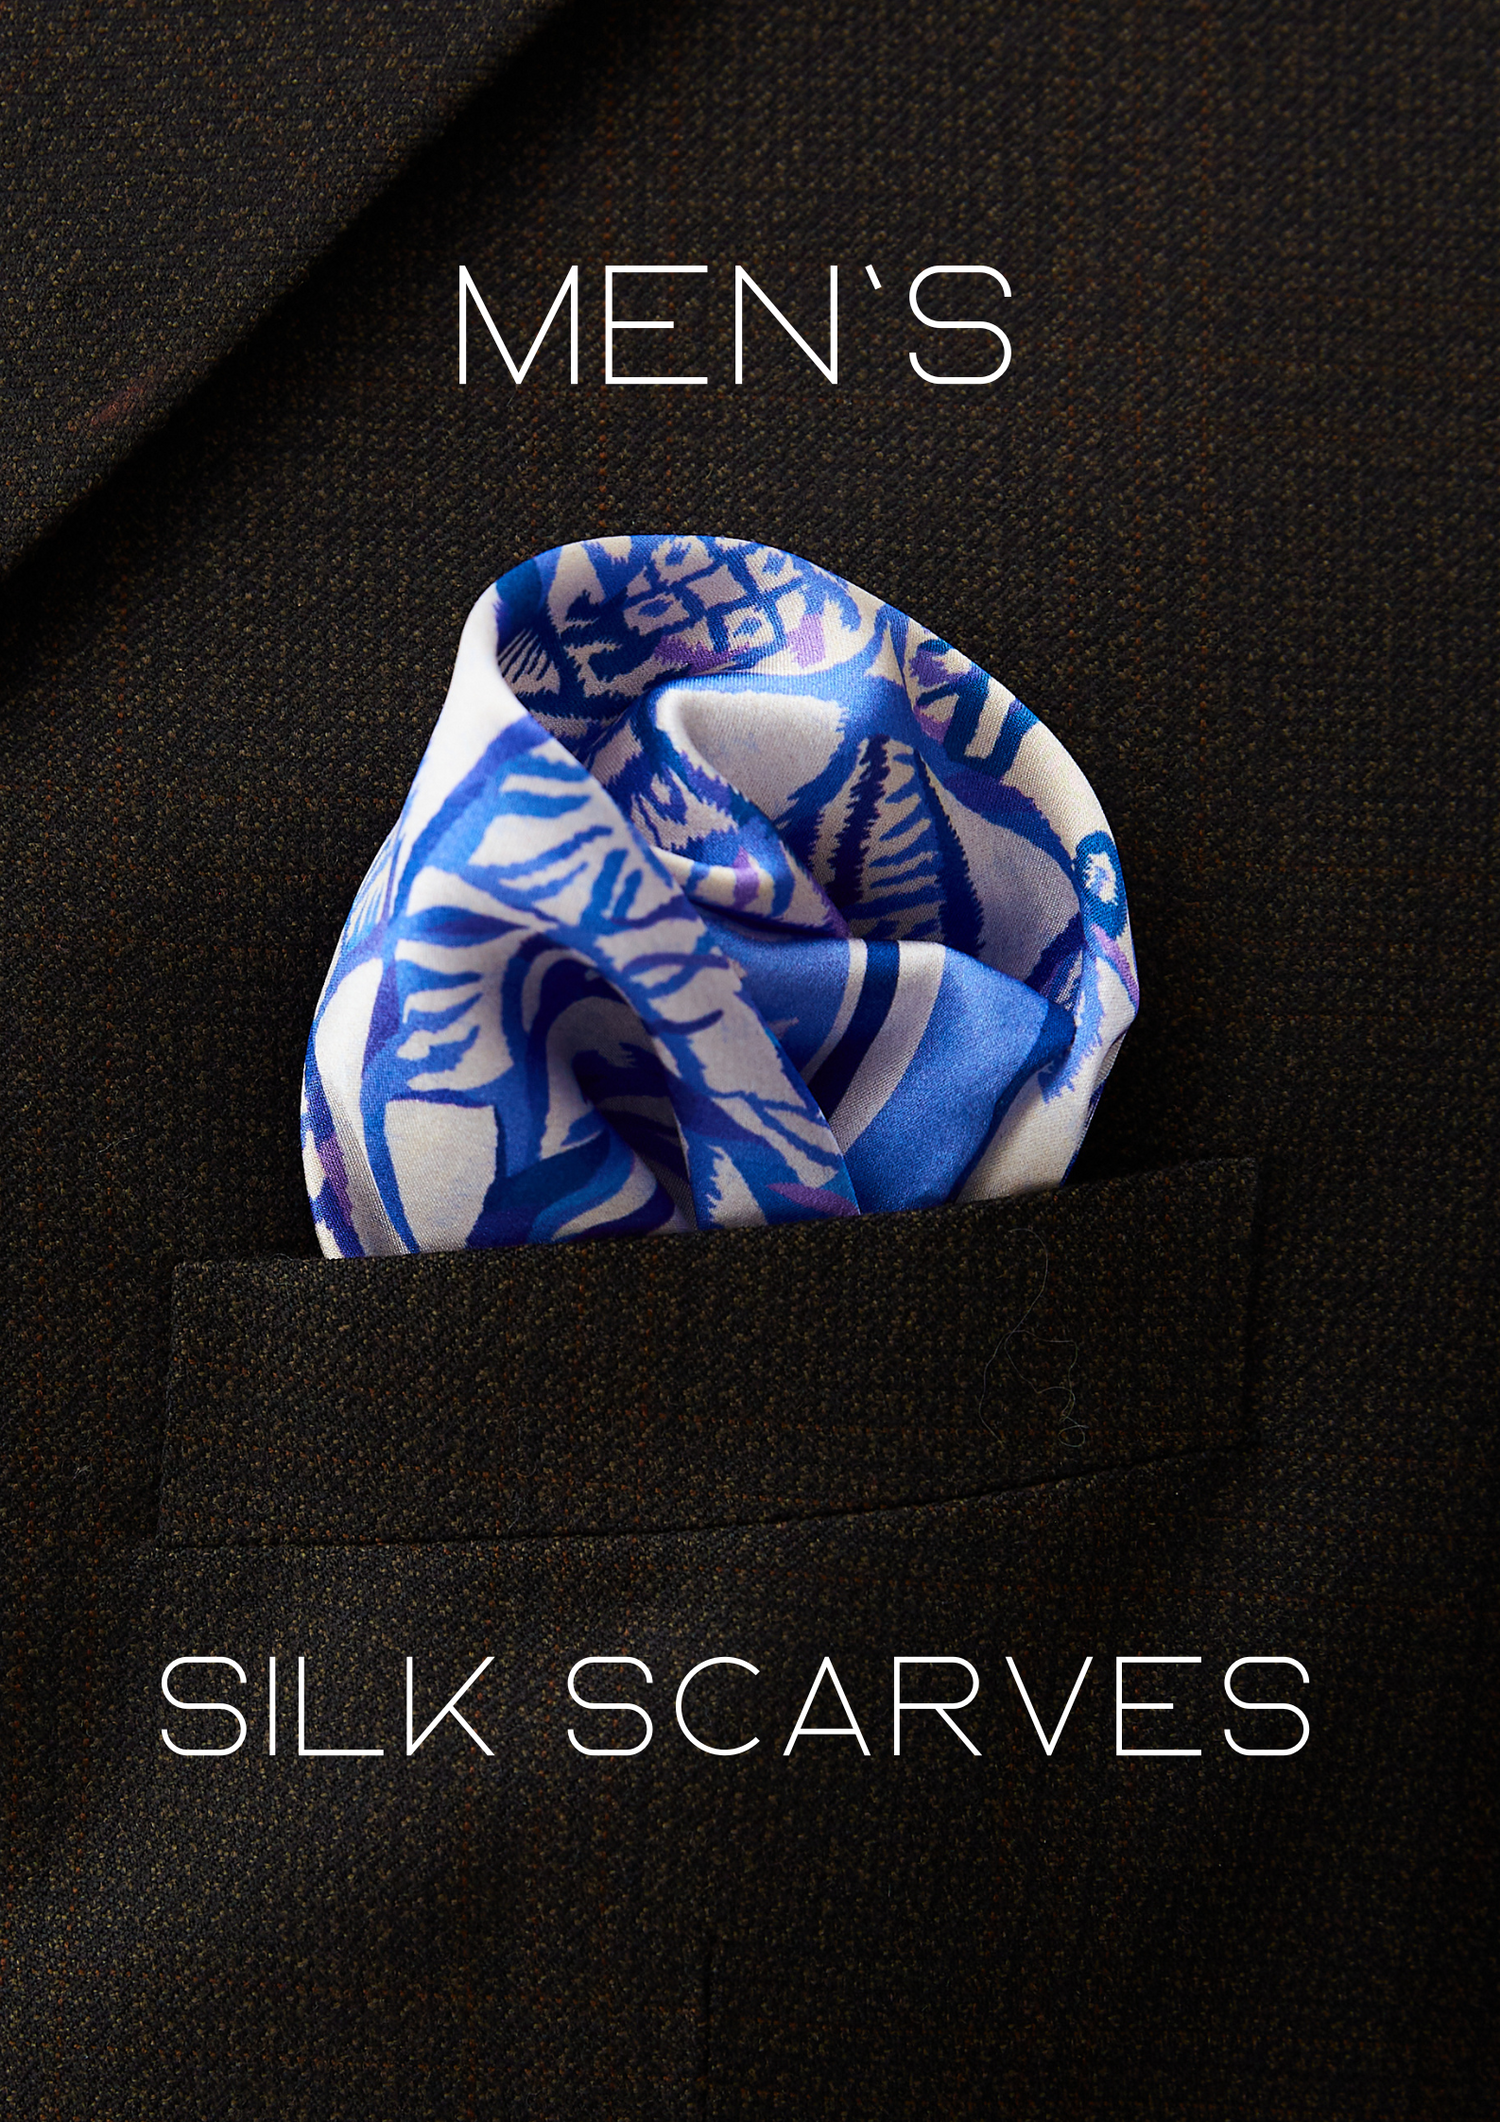 Men's pache scarves